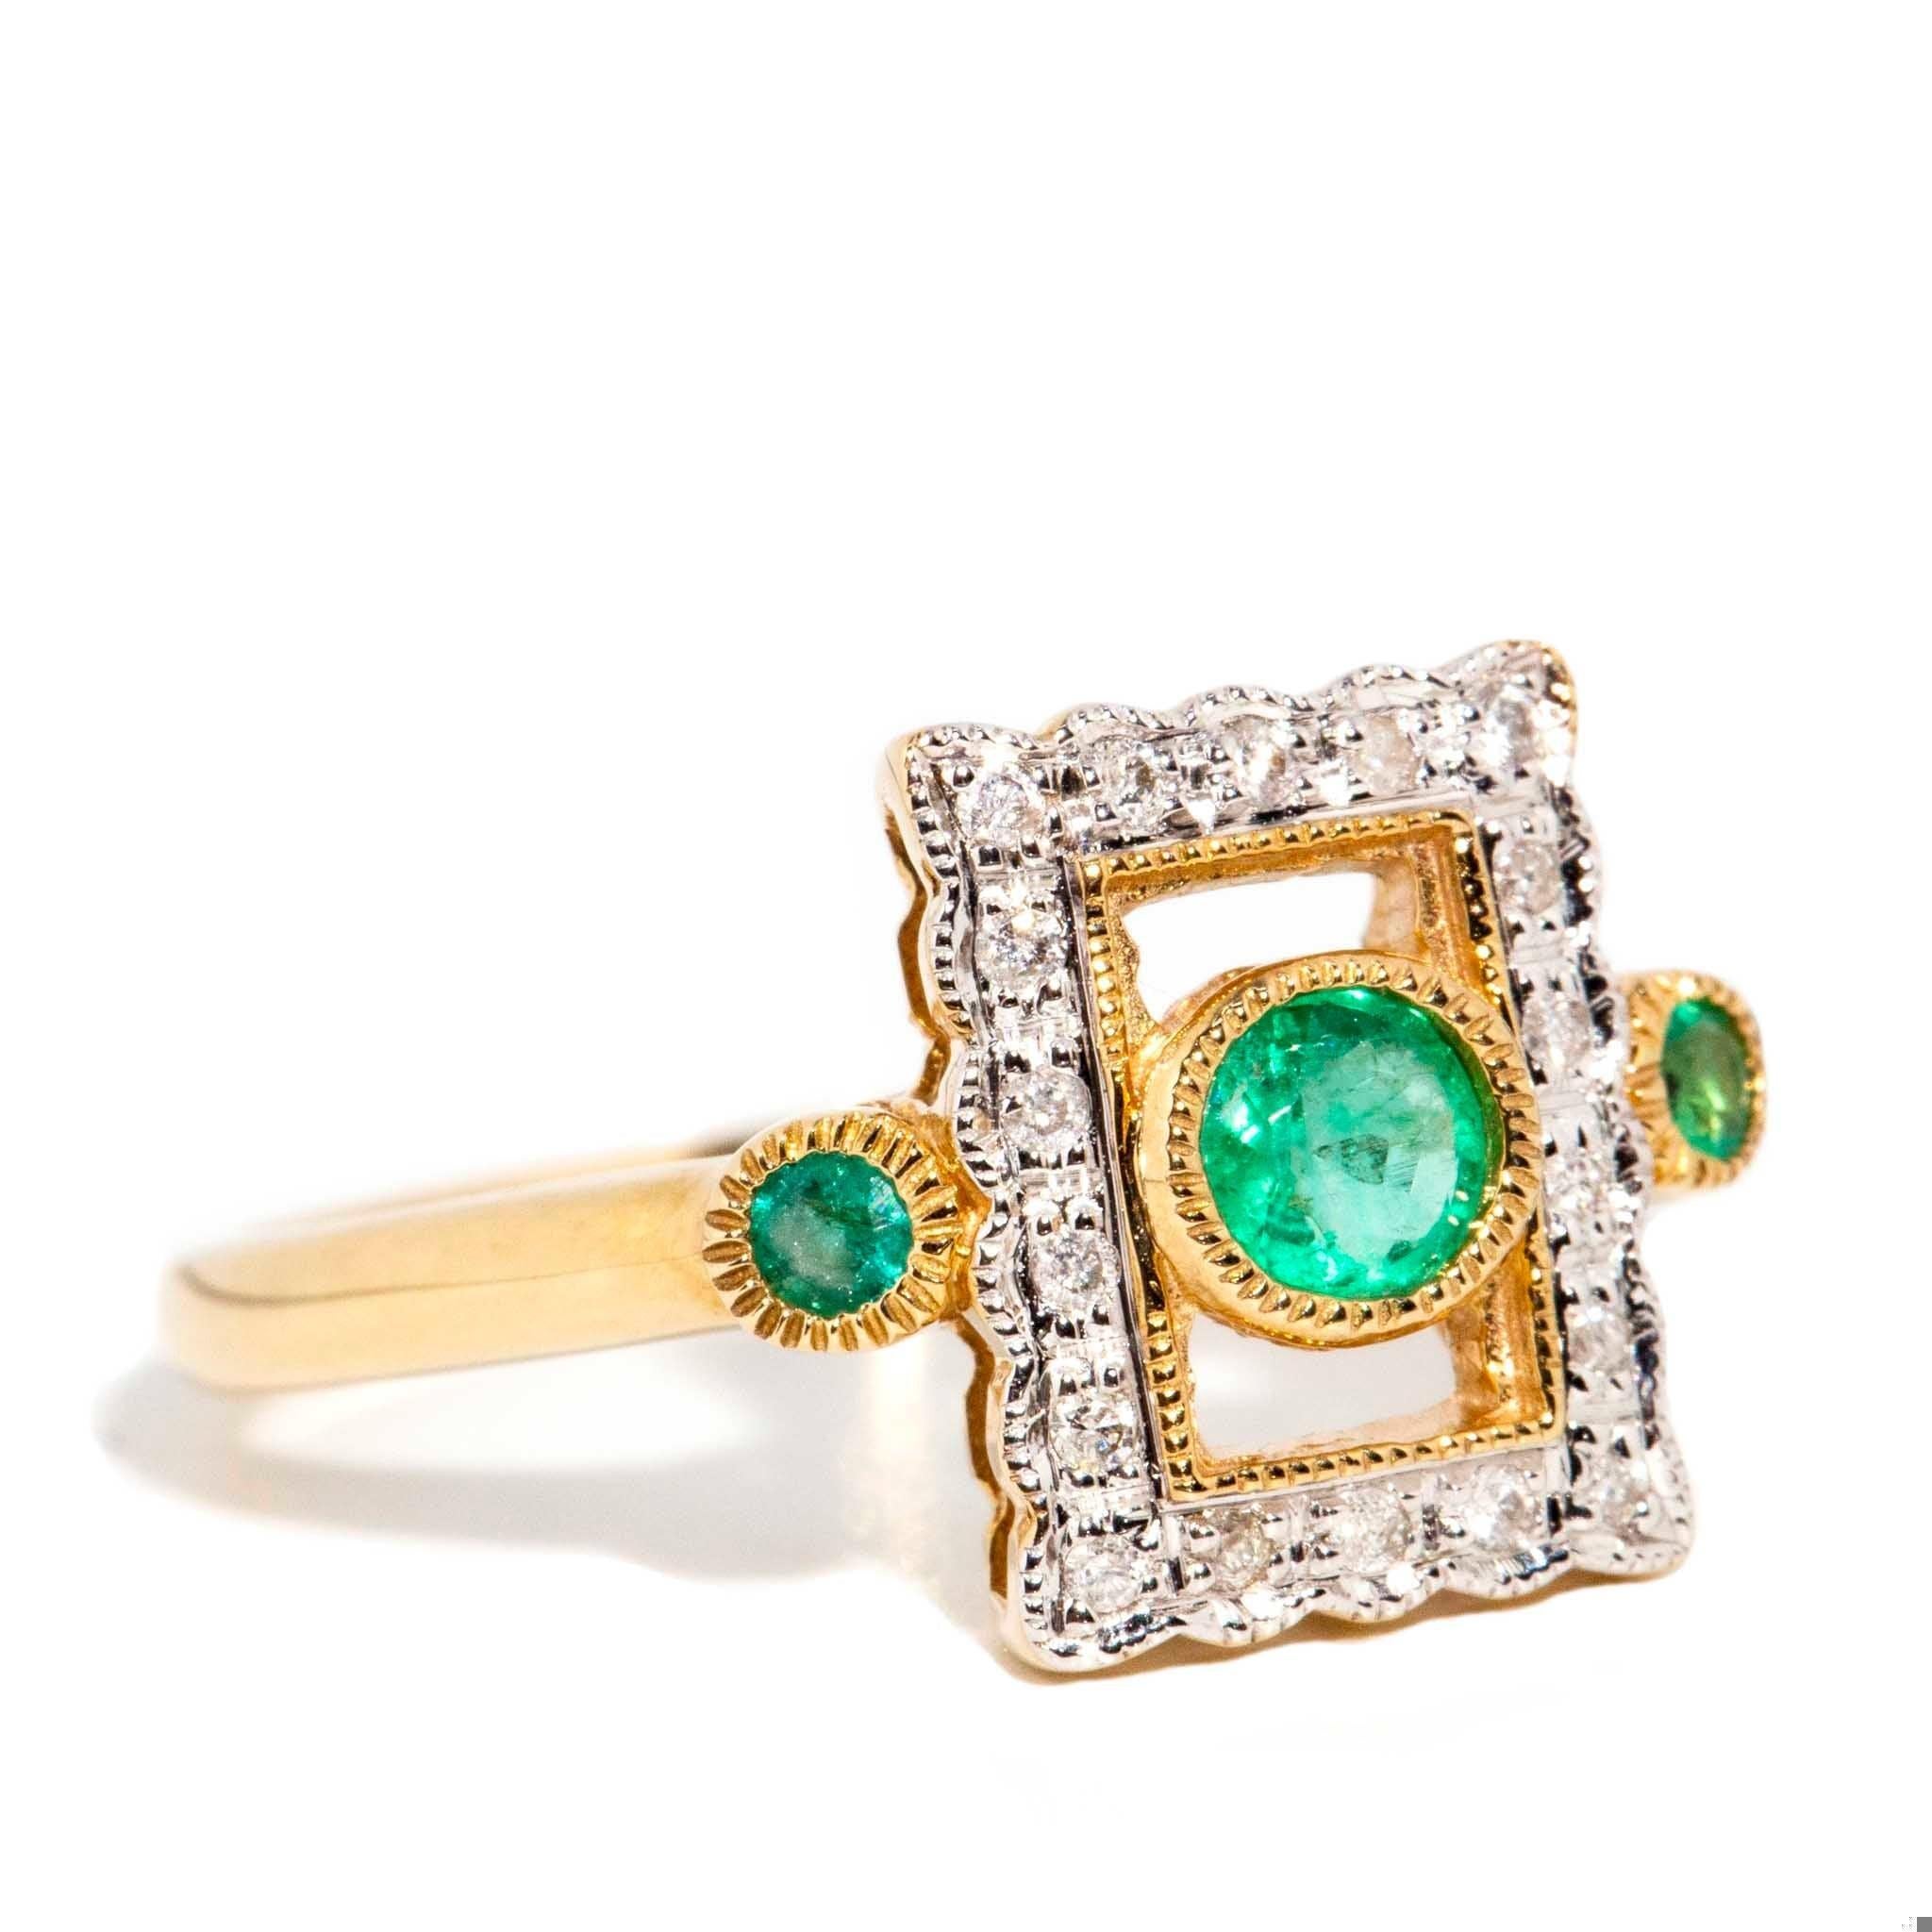 Eine zarte Spitzenfassung aus diamantbesetztem Gold präsentiert einen prächtigen Smaragd, dessen Glanz nur von den Smaragden an ihrer Seite übertroffen wird. Sie ist der Francie Ring aus 9 Karat Gold, der die tiefe, süße Zerbrechlichkeit des ersten